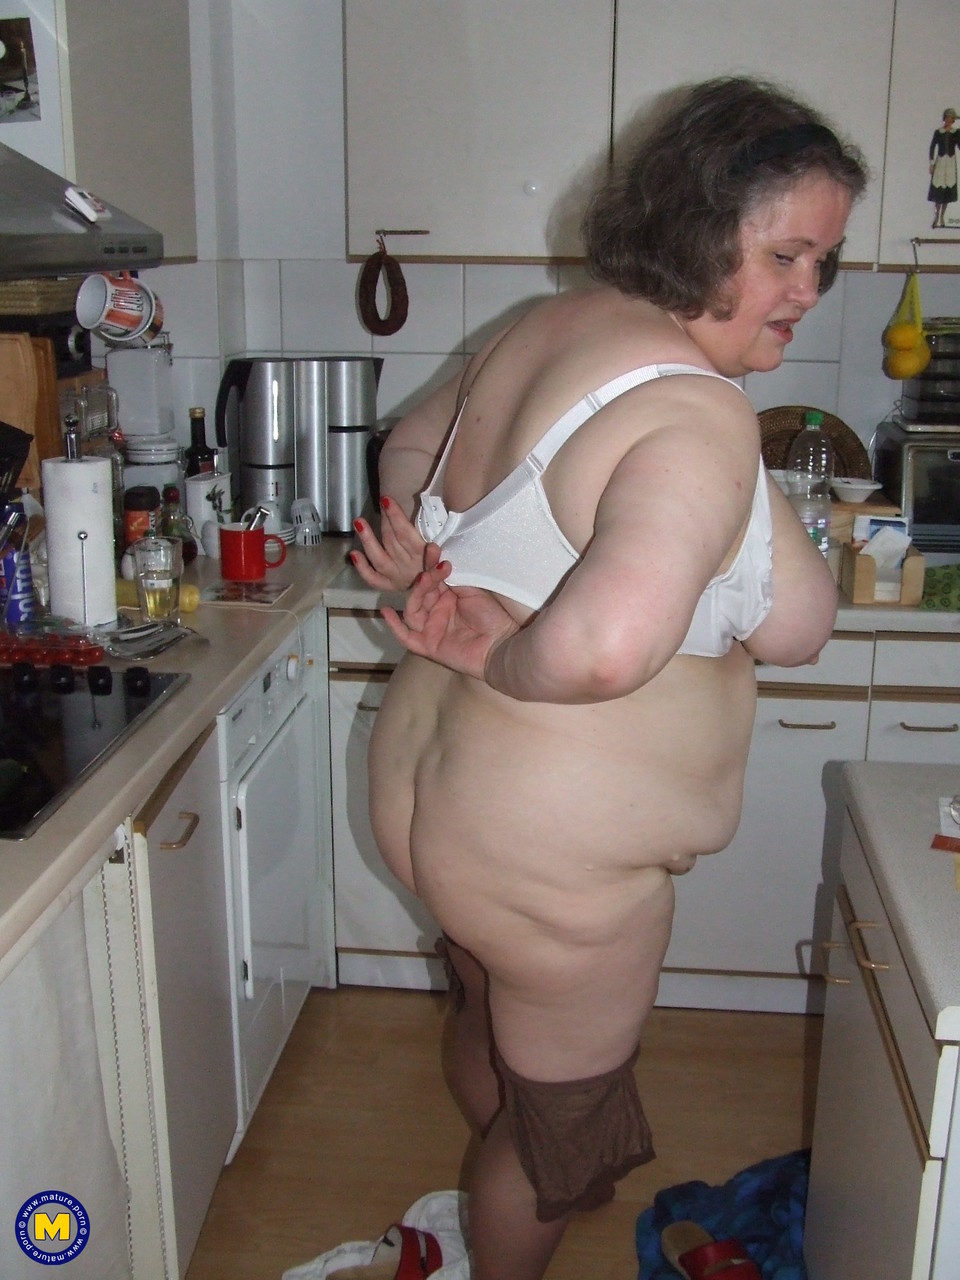 Fat mature housewife Birgid masturbates with a cucumber in the kitchen foto porno #423883232 | Mature NL Pics, Birgid, Granny, porno ponsel